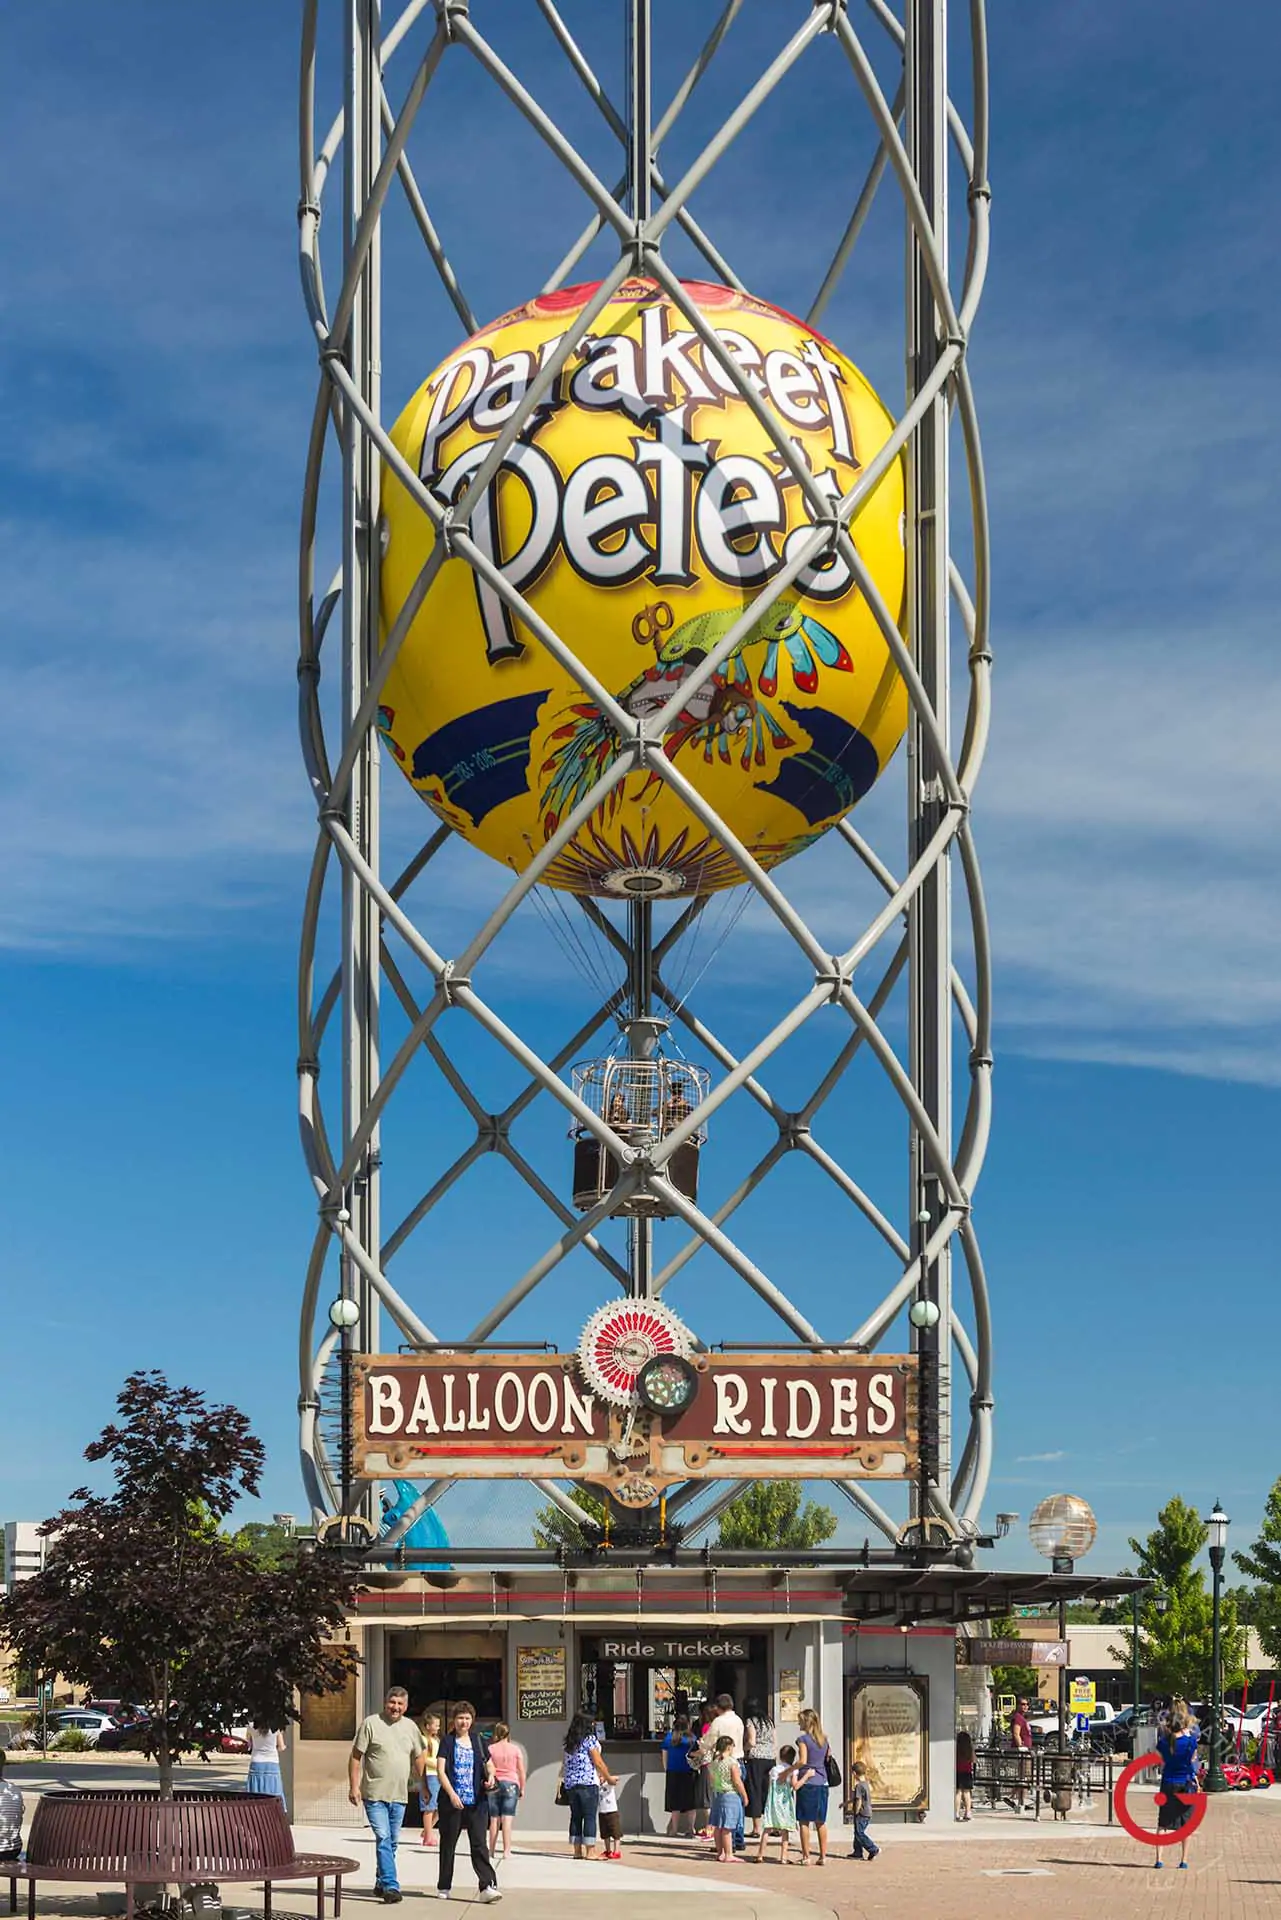 Parakeet Pete's Steampunk Balloon - Advertising photographers in Branson Missouri, Branson Missouri photography